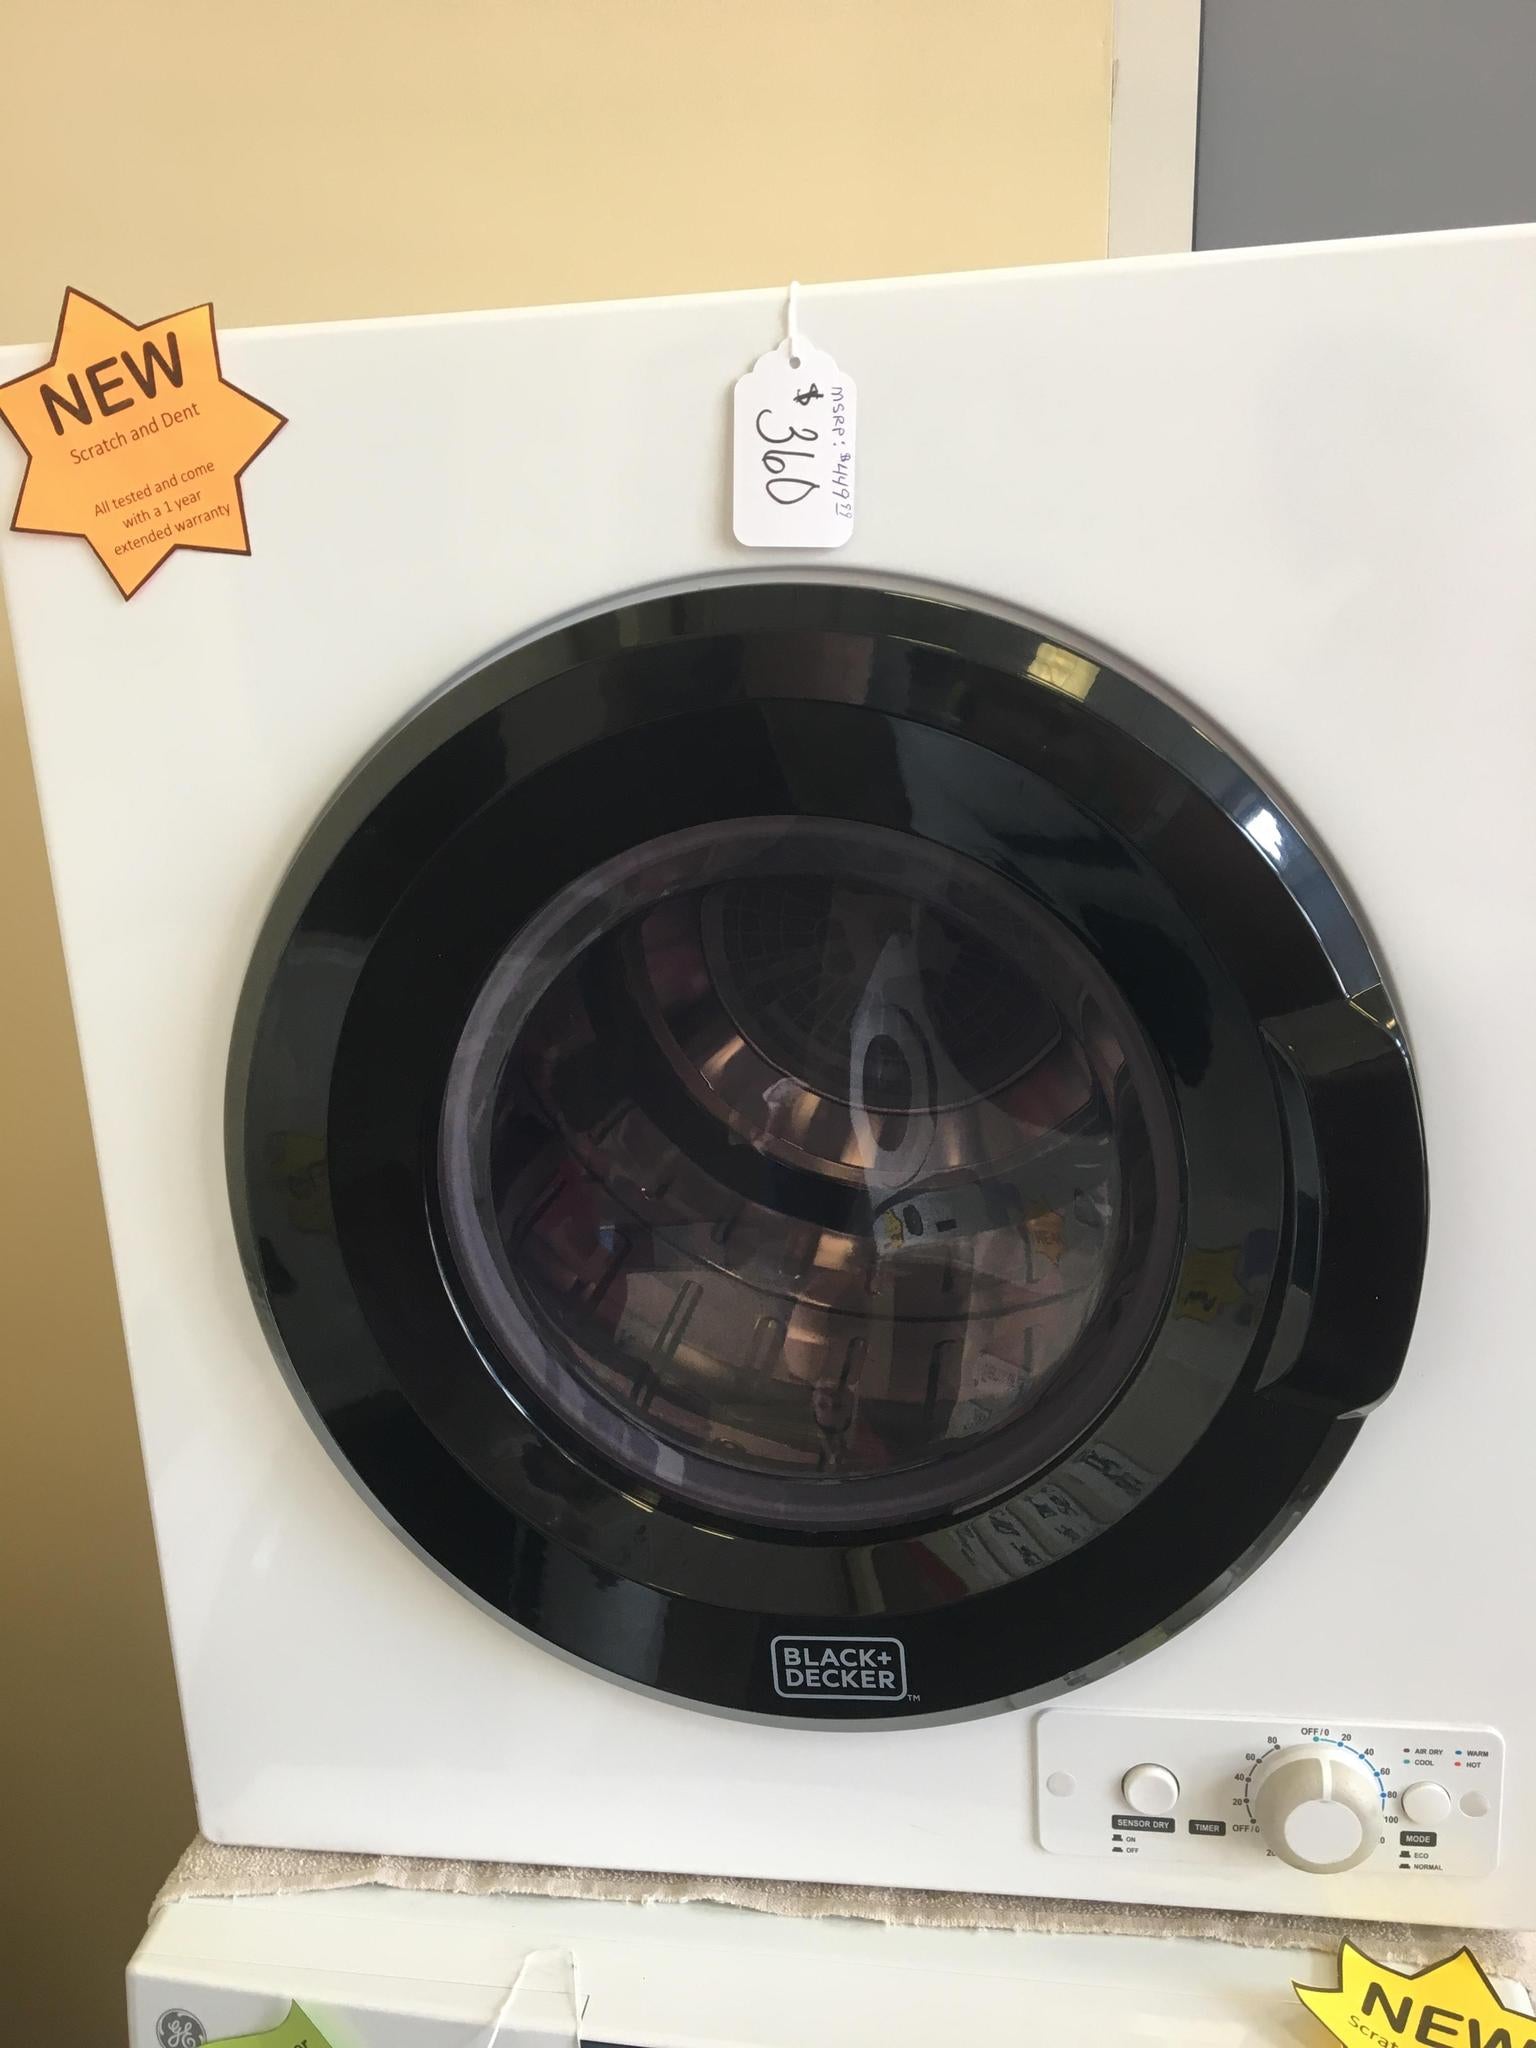 black and decker portable washer e1｜TikTok Search